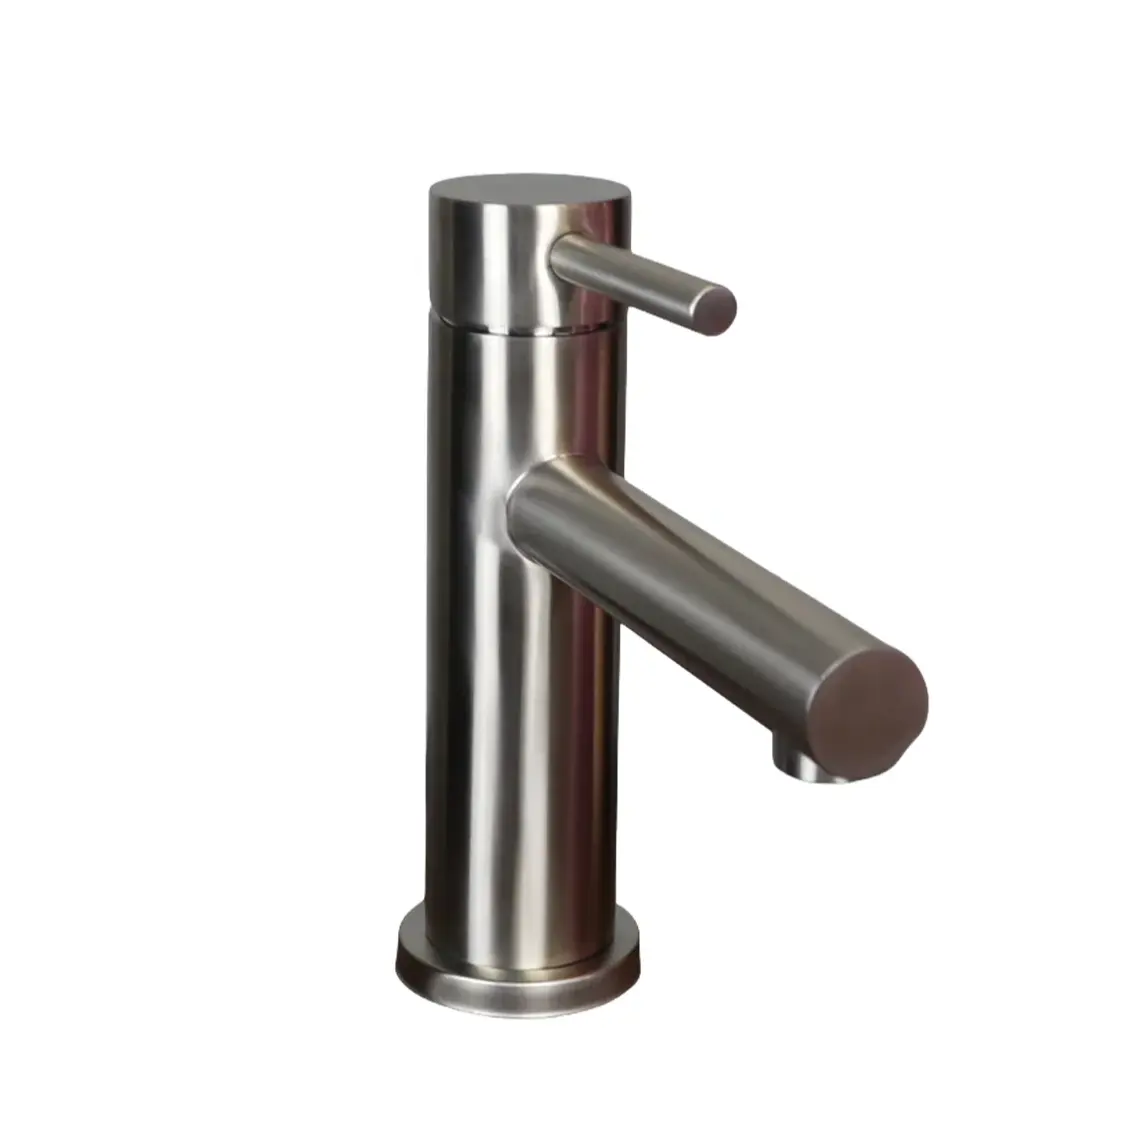 EVOMAX aço inoxidável torneira do banheiro torneira polida torneira bacia moderna EFSU-B034